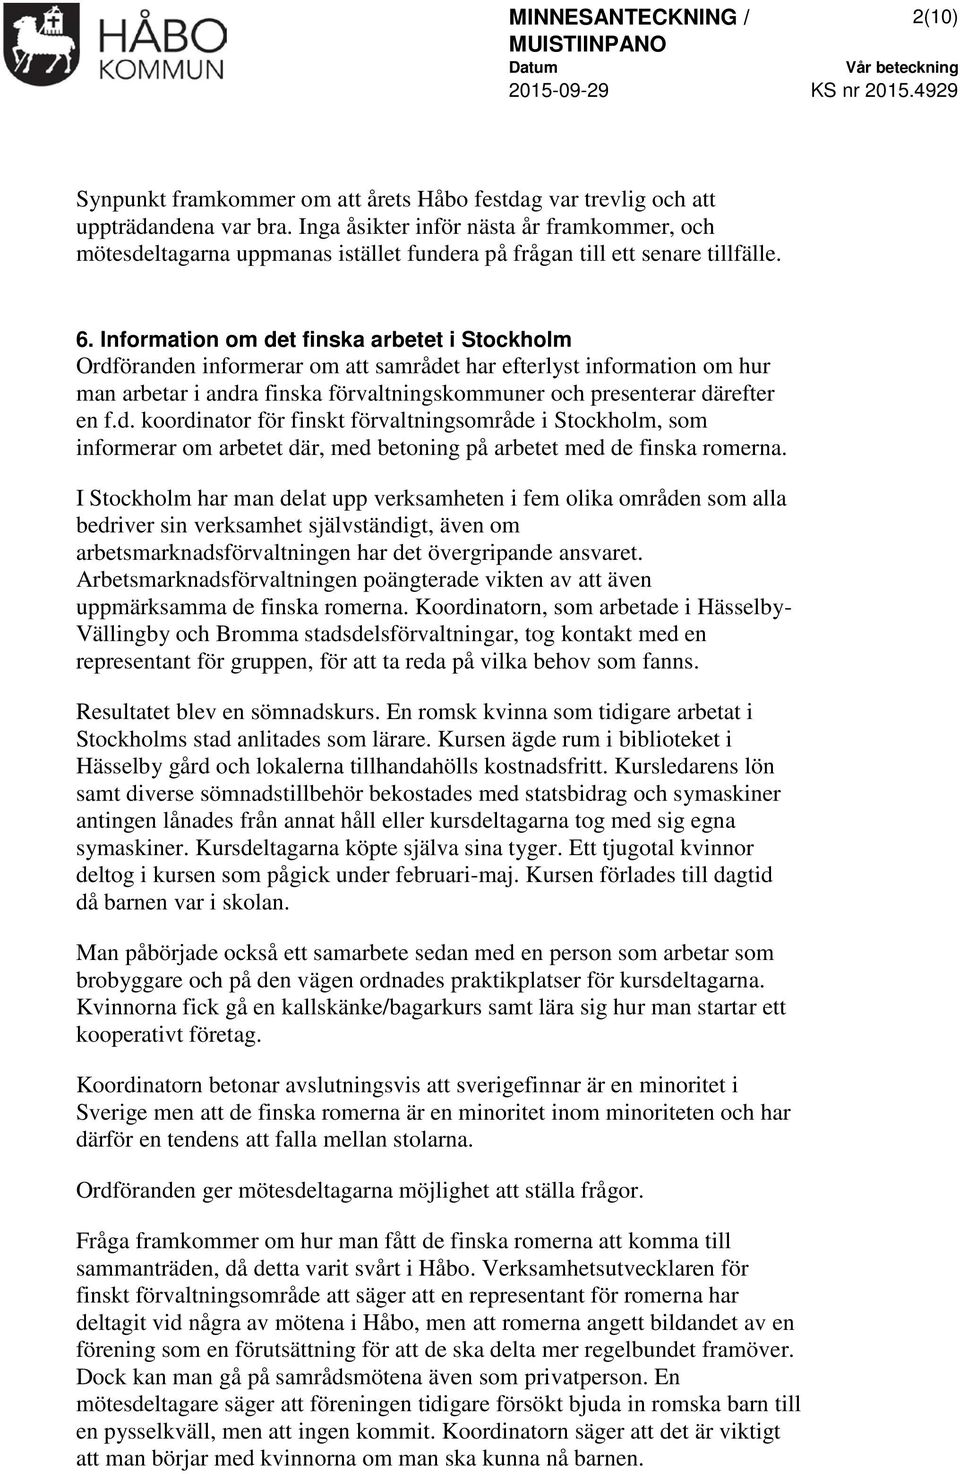 Information om det finska arbetet i Stockholm Ordföranden informerar om att samrådet har efterlyst information om hur man arbetar i andra finska förvaltningskommuner och presenterar därefter en f.d. koordinator för finskt förvaltningsområde i Stockholm, som informerar om arbetet där, med betoning på arbetet med de finska romerna.